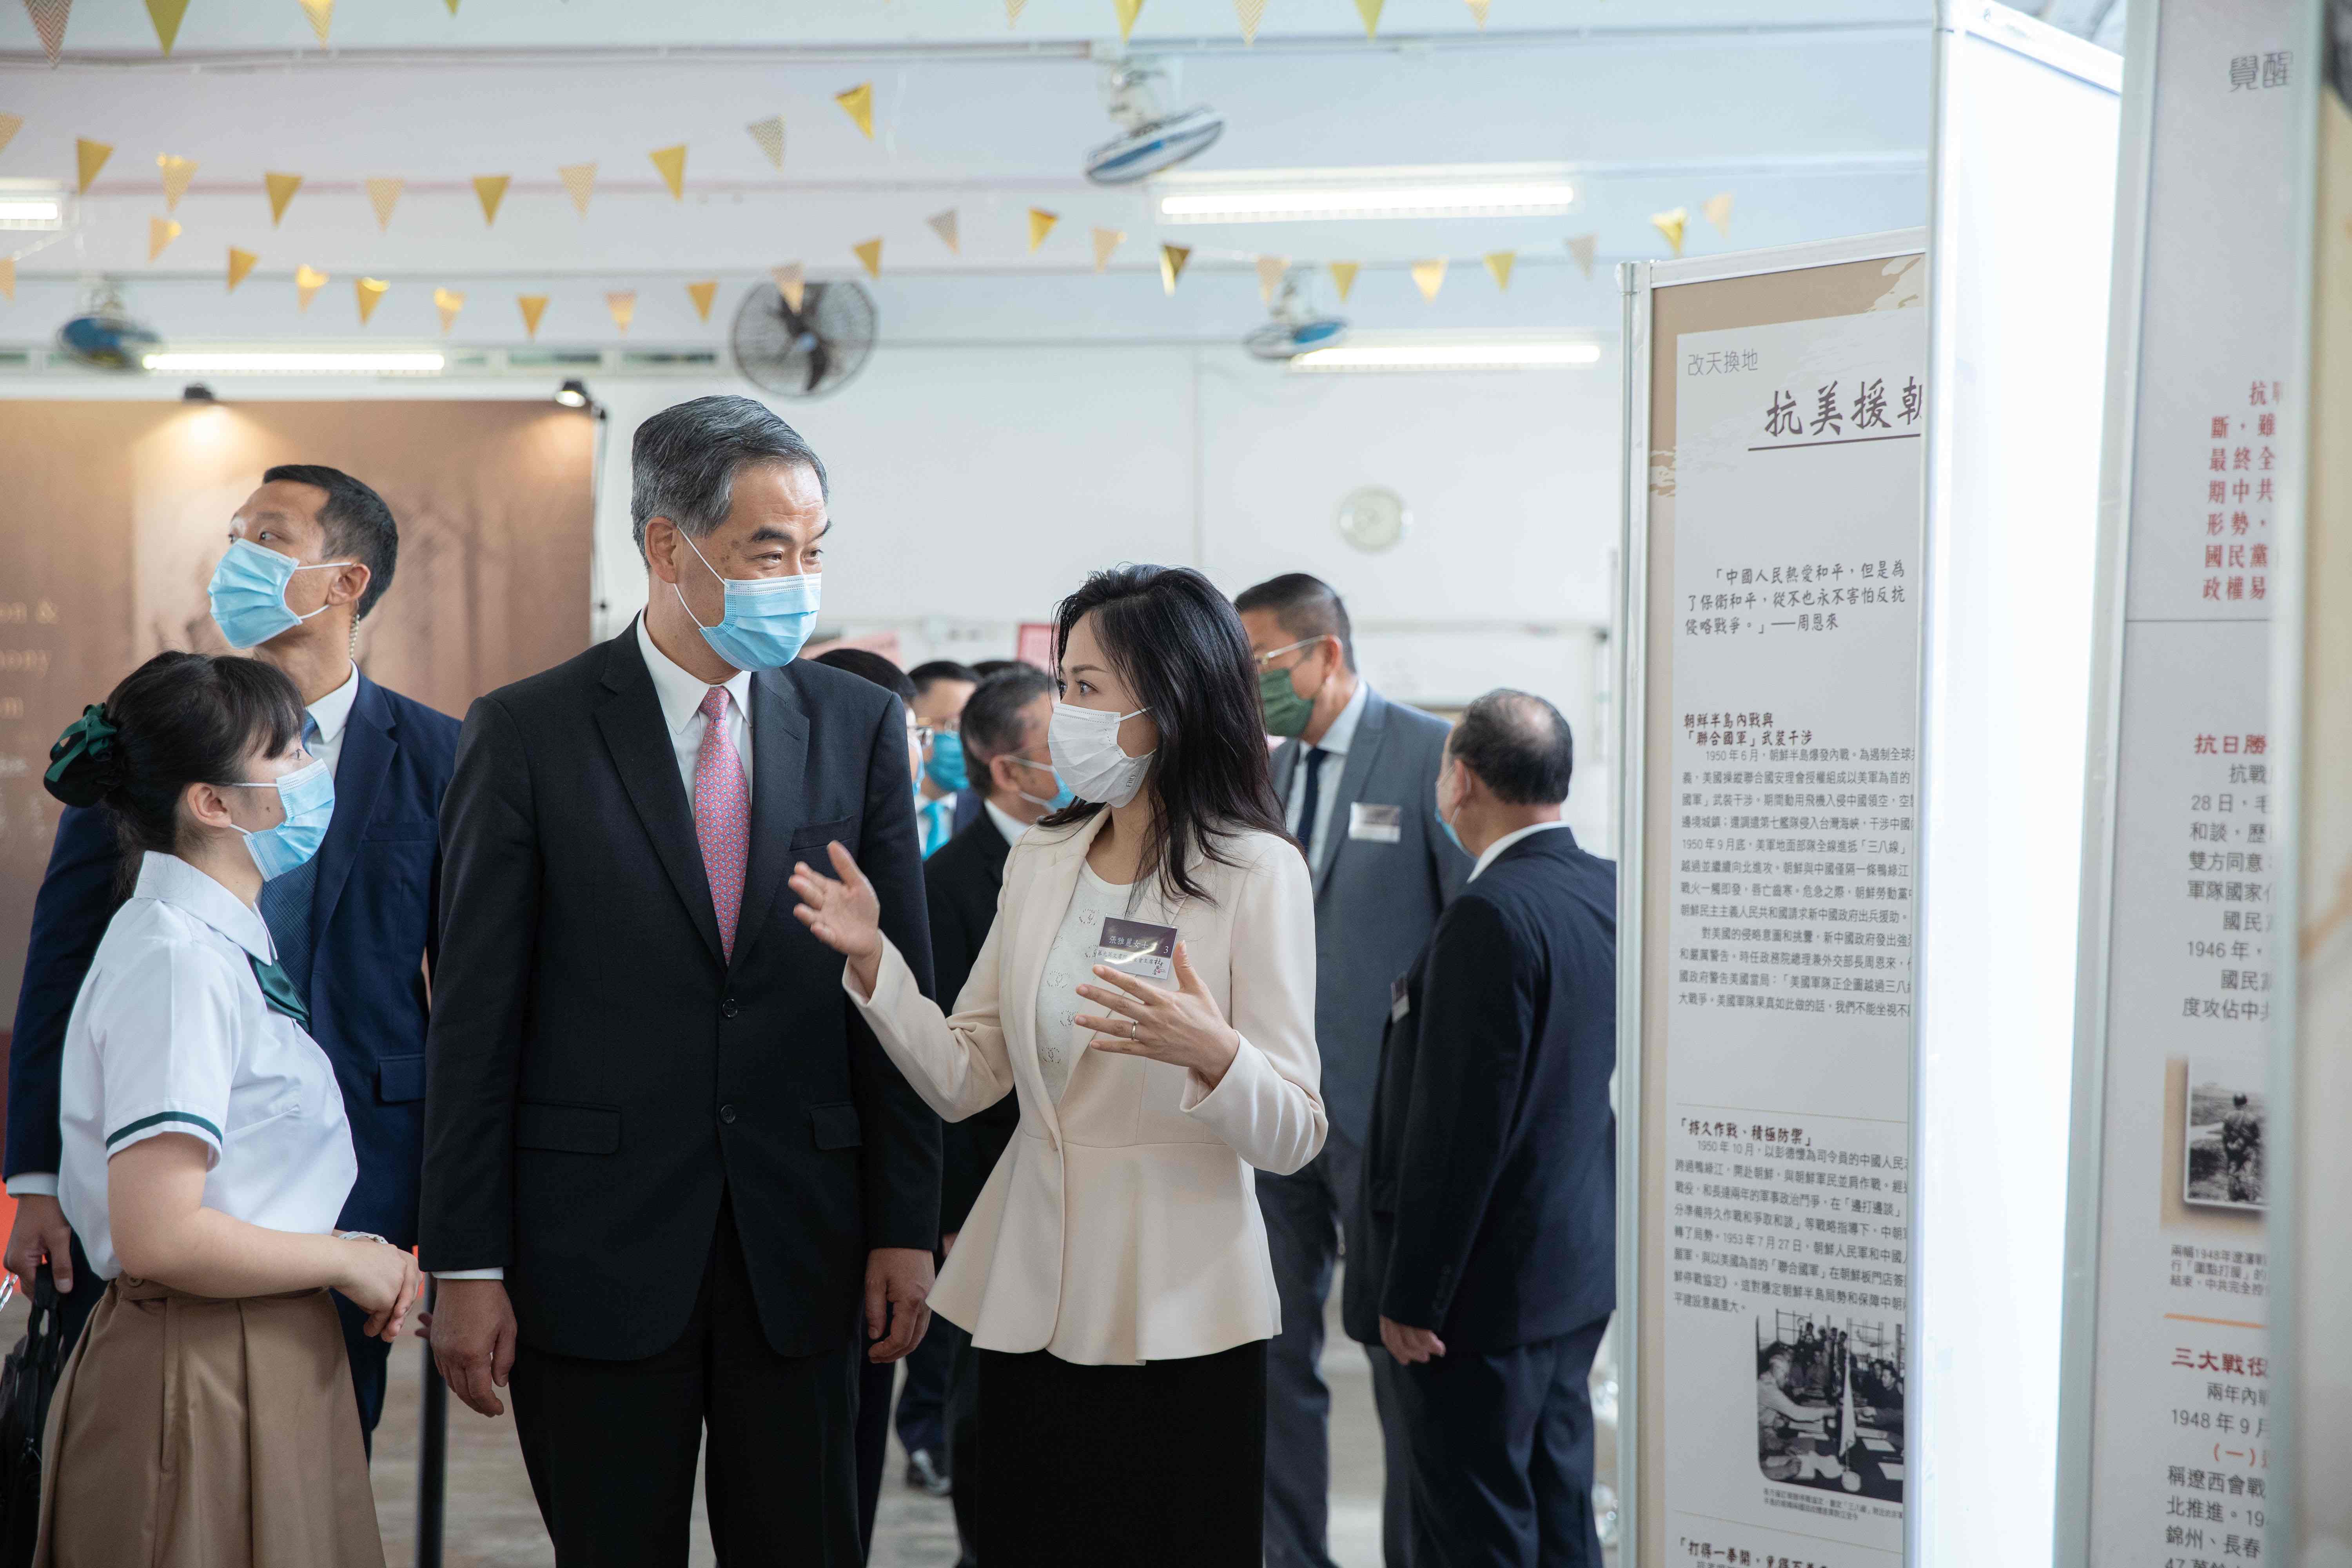 杜葉錫恩紀念館開幕暨《百年歷史 當代中國》圖文展舉辦